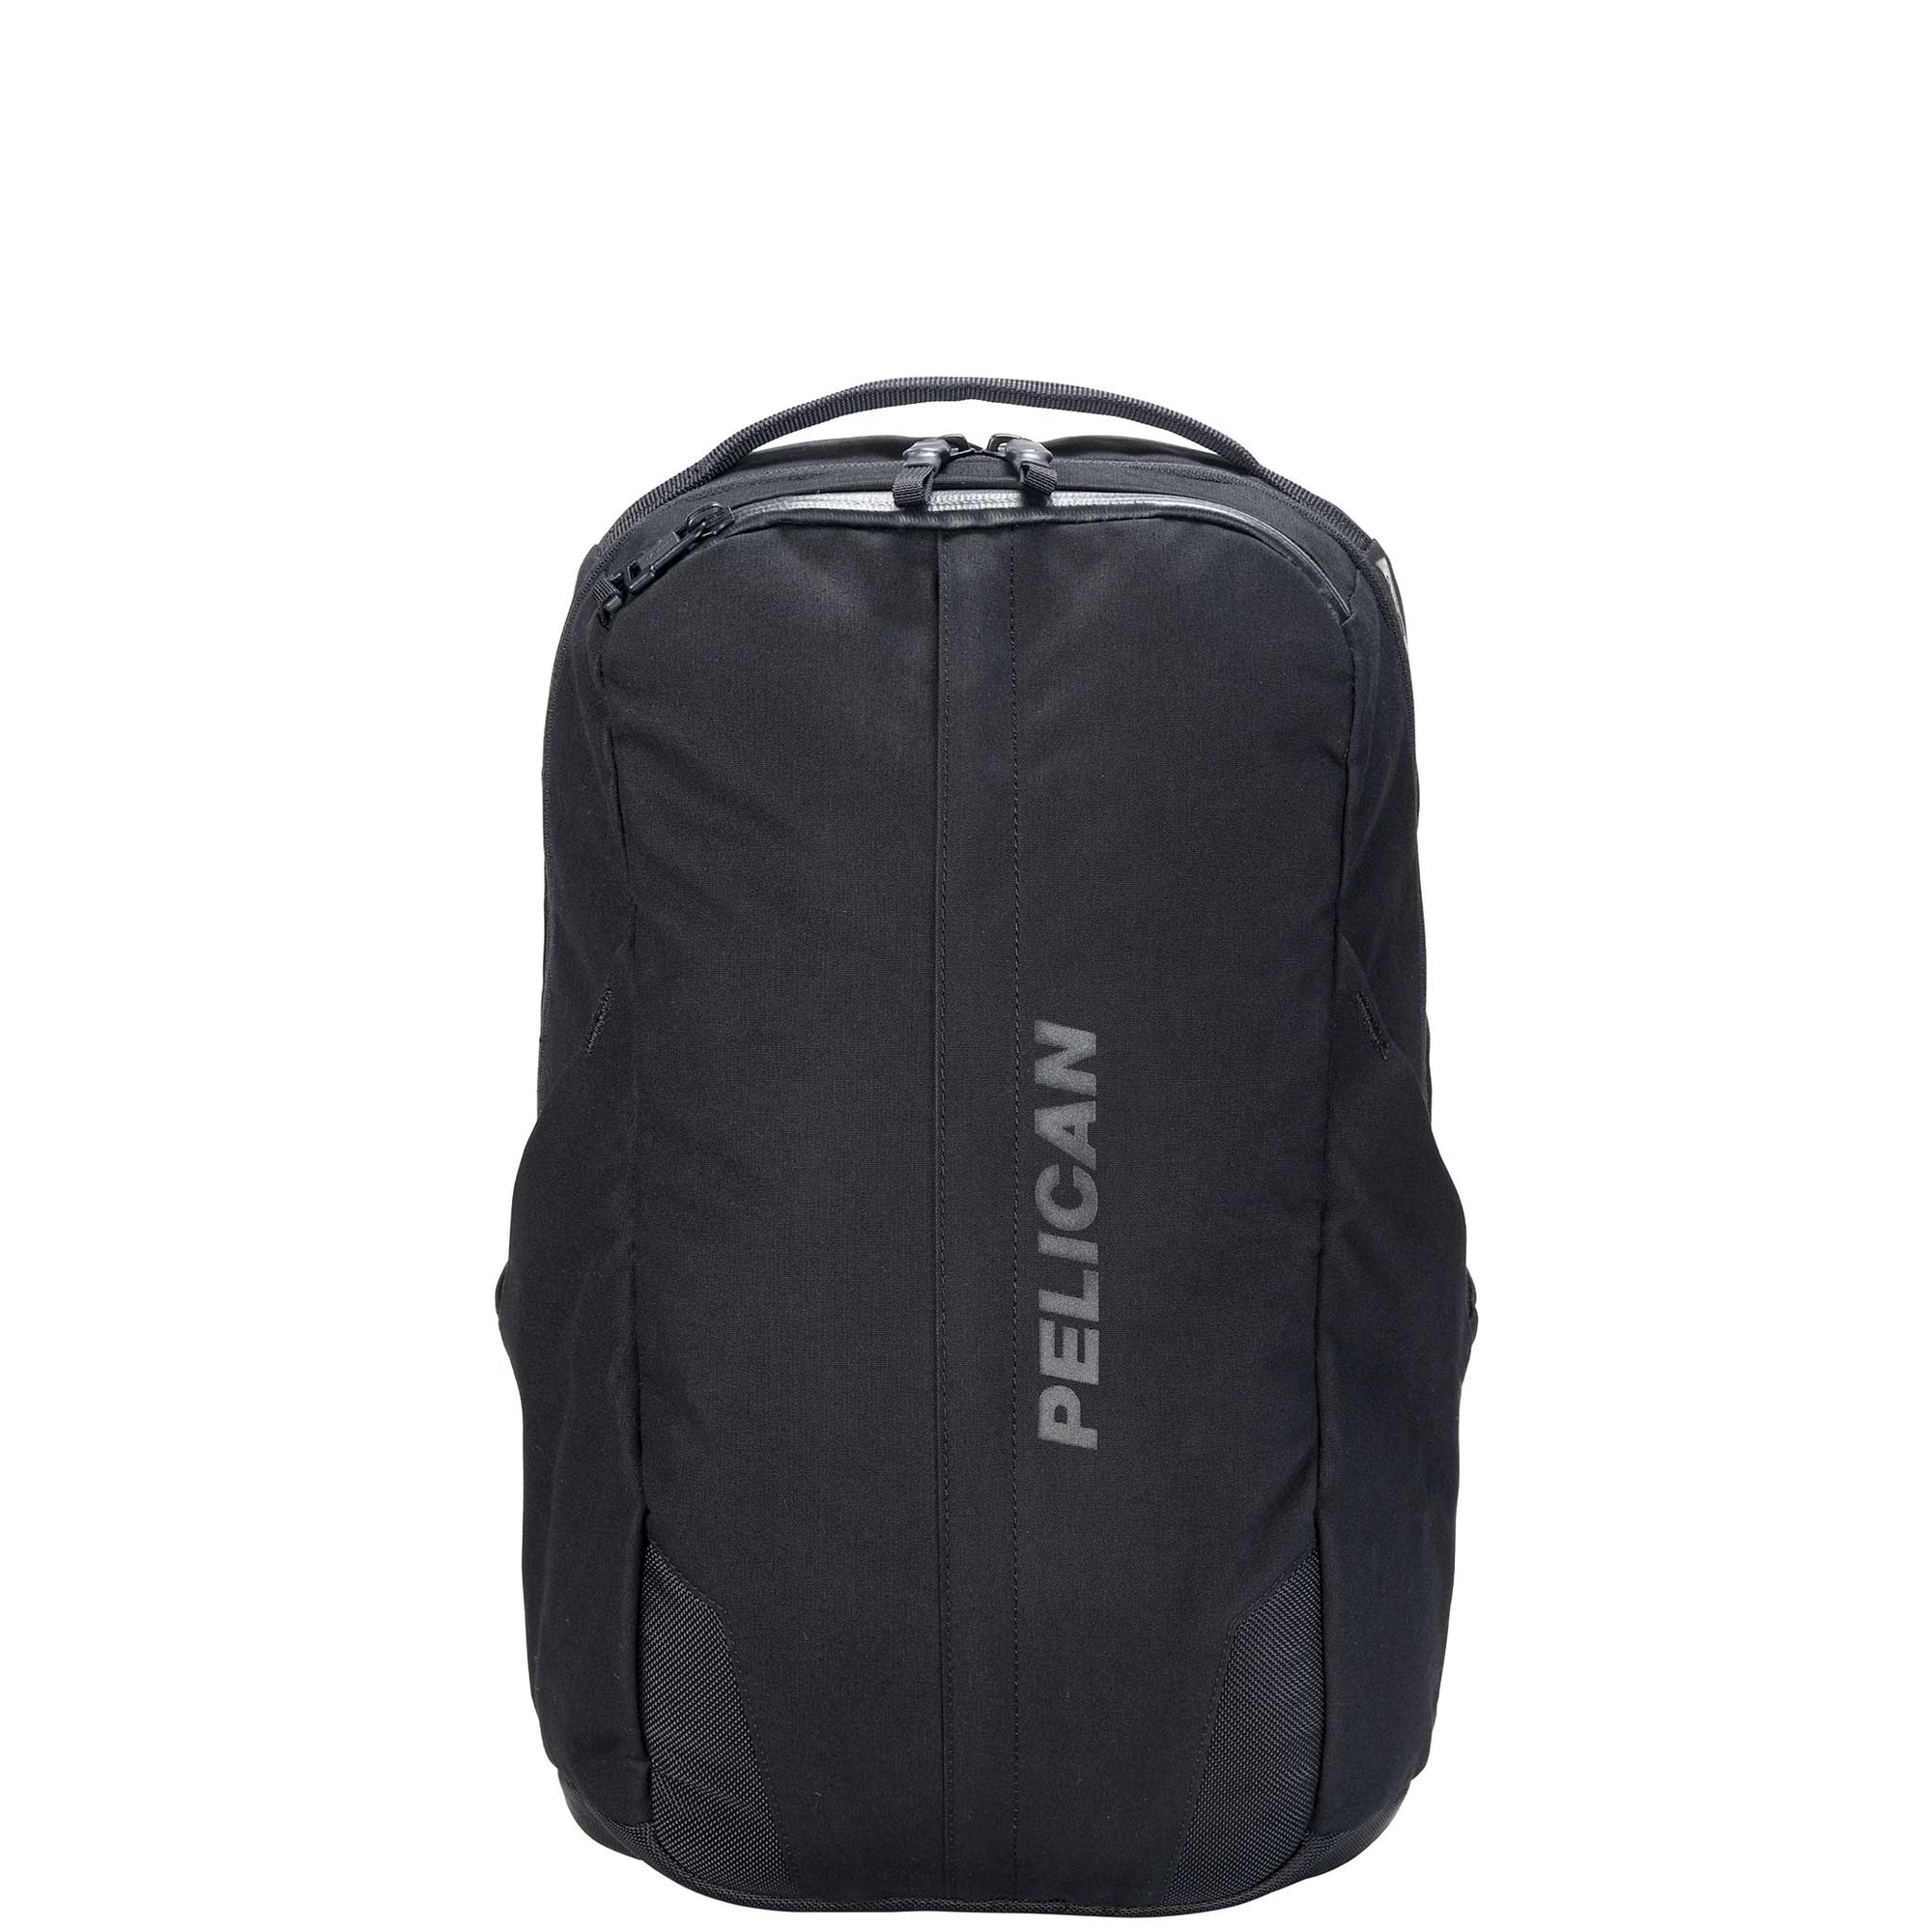 Pelican MPB20 Backpack in black